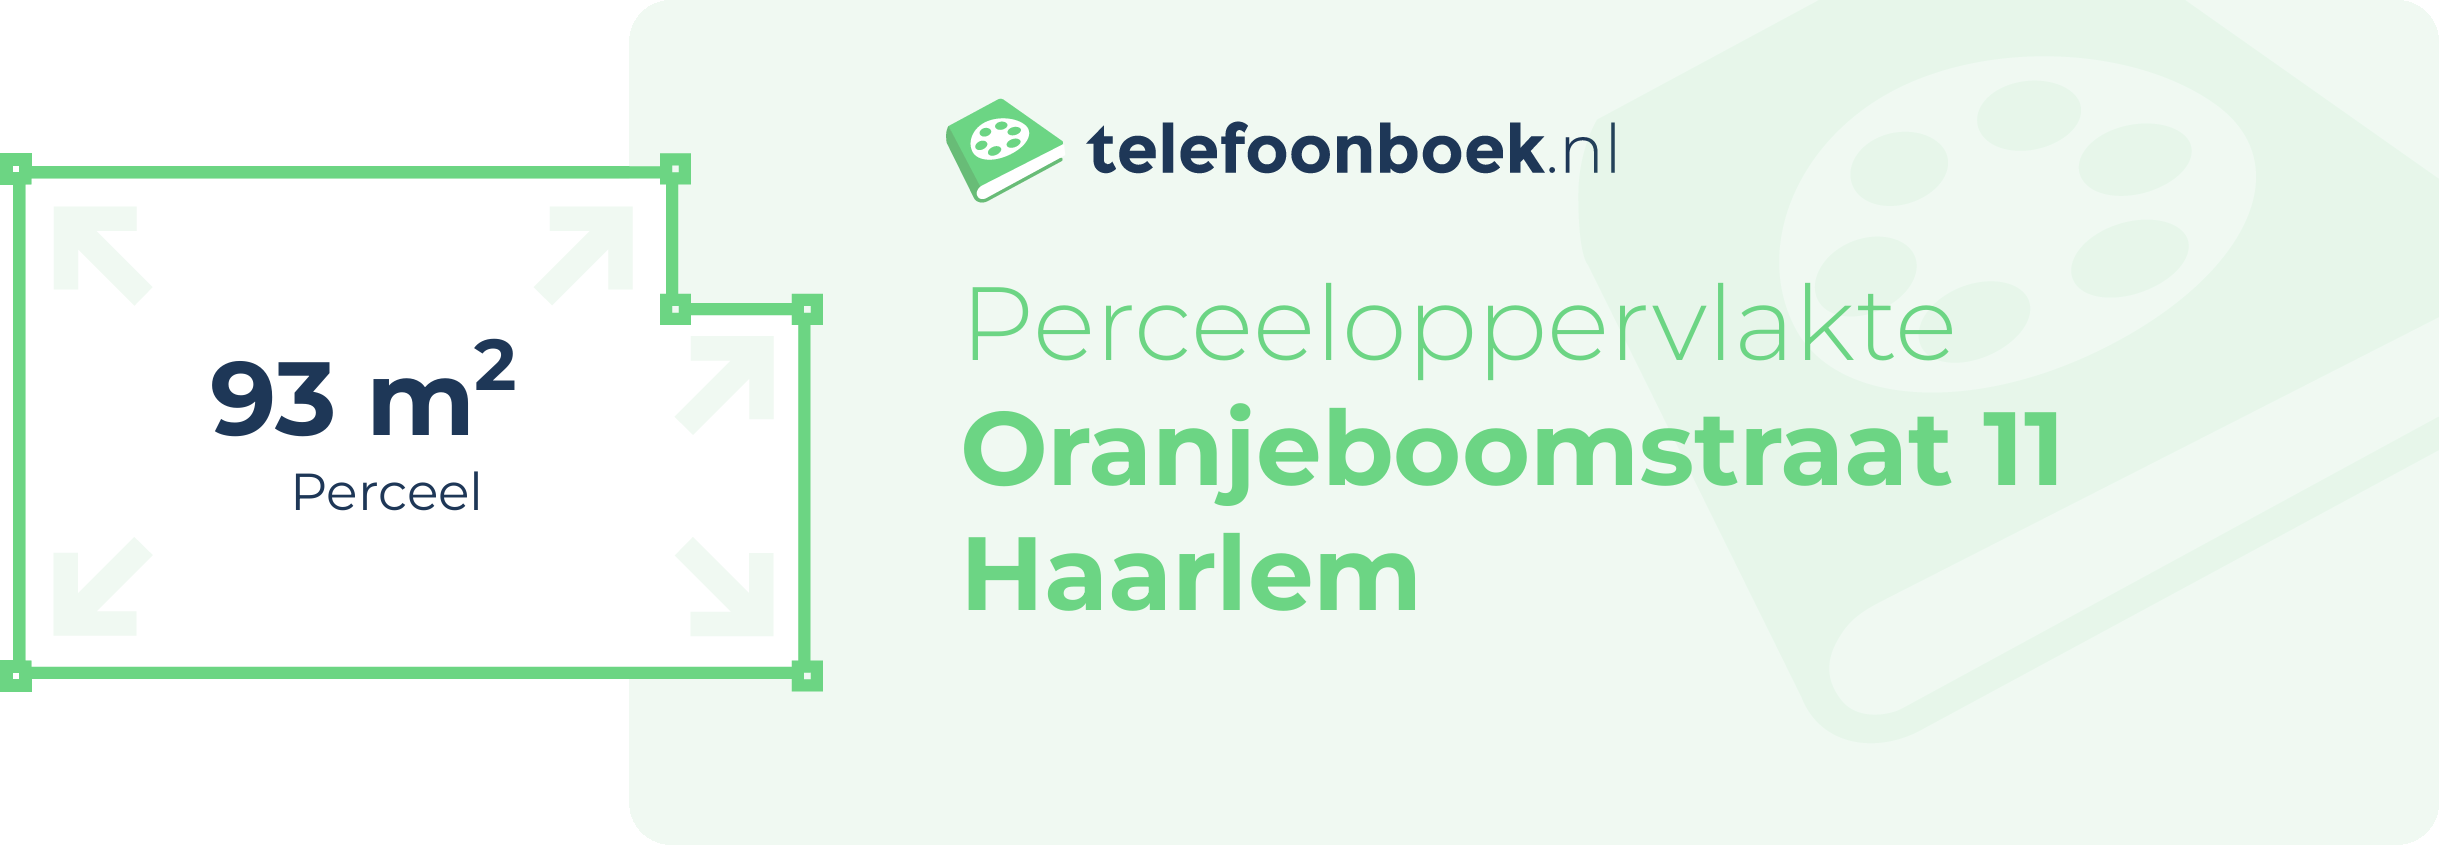 Perceeloppervlakte Oranjeboomstraat 11 Haarlem